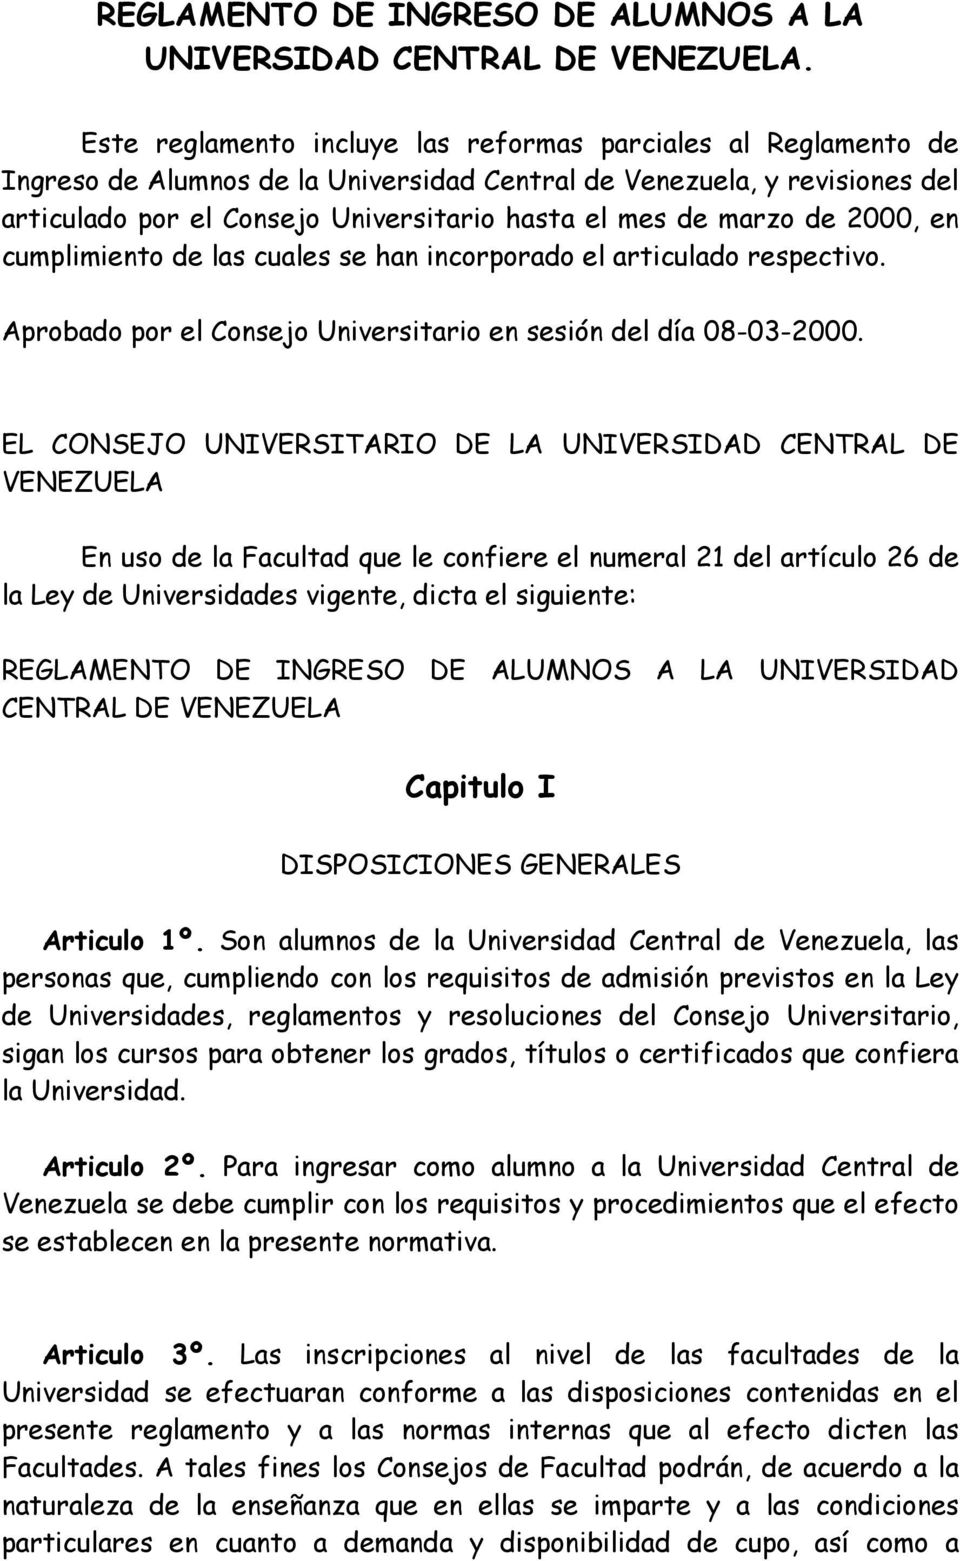 marzo de 2000, en cumplimiento de las cuales se han incorporado el articulado respectivo. Aprobado por el Consejo Universitario en sesión del día 08-03-2000.